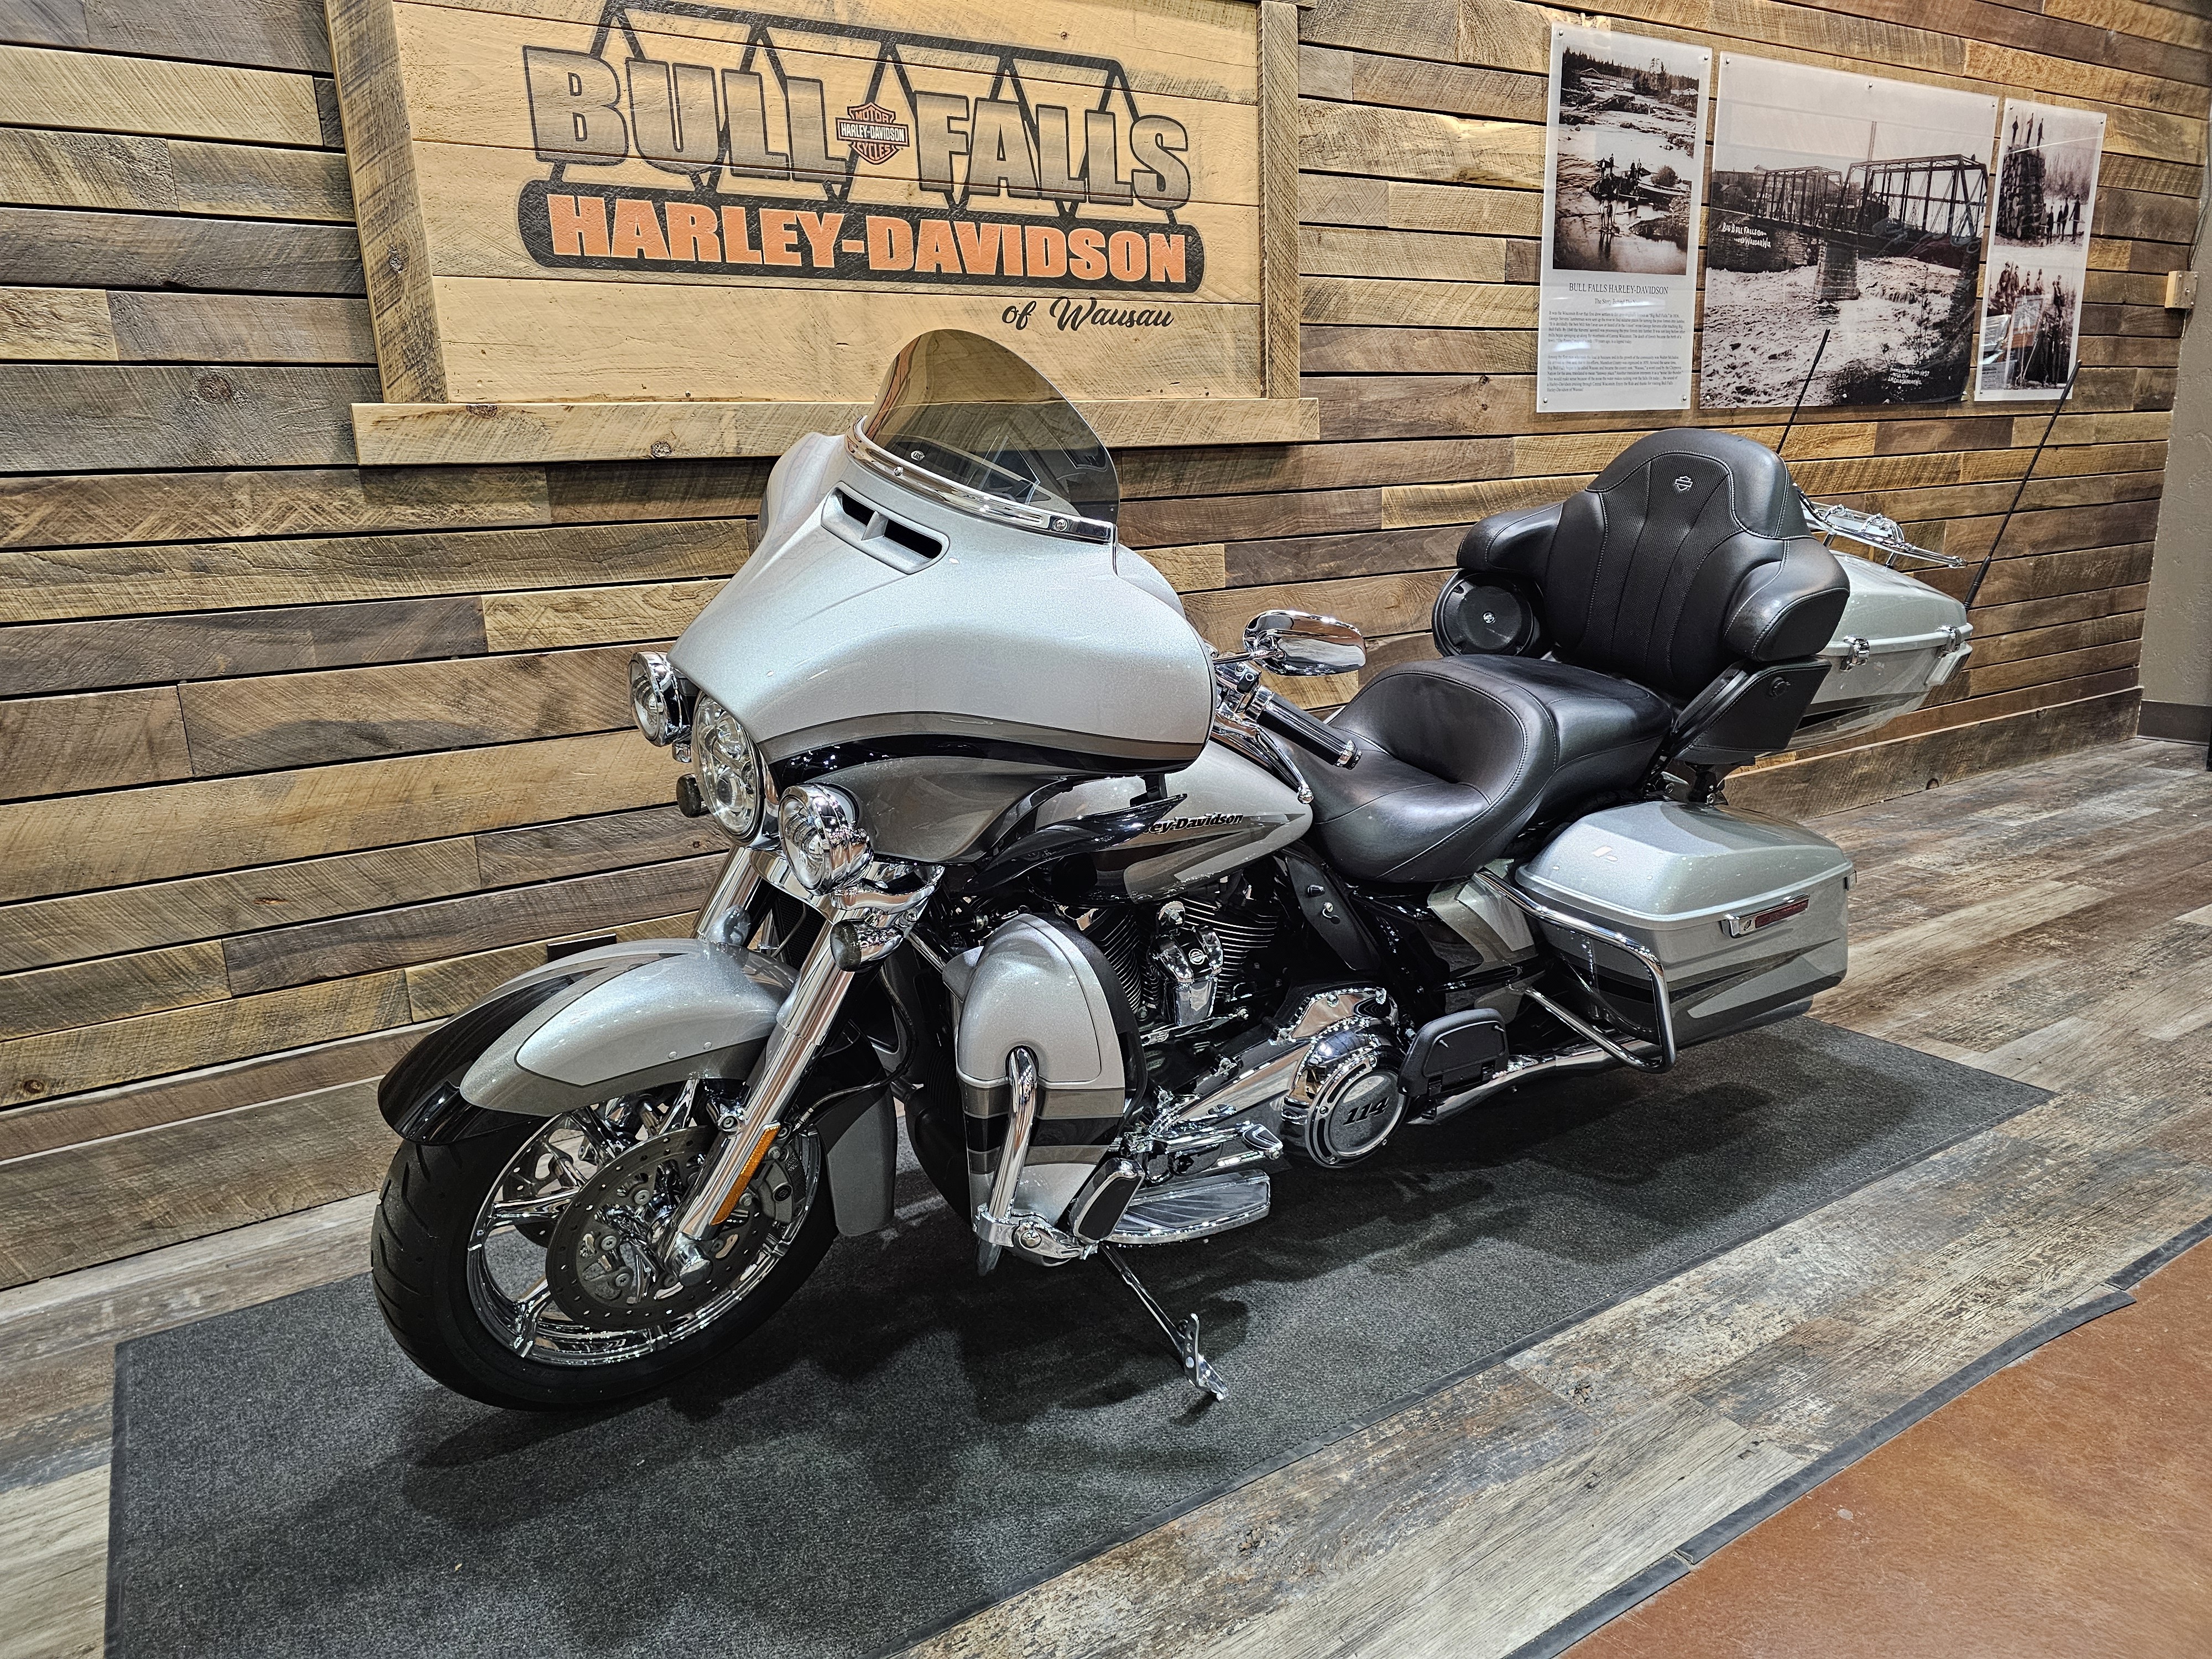 2017 Harley-Davidson Electra Glide CVO Limited at Bull Falls Harley-Davidson